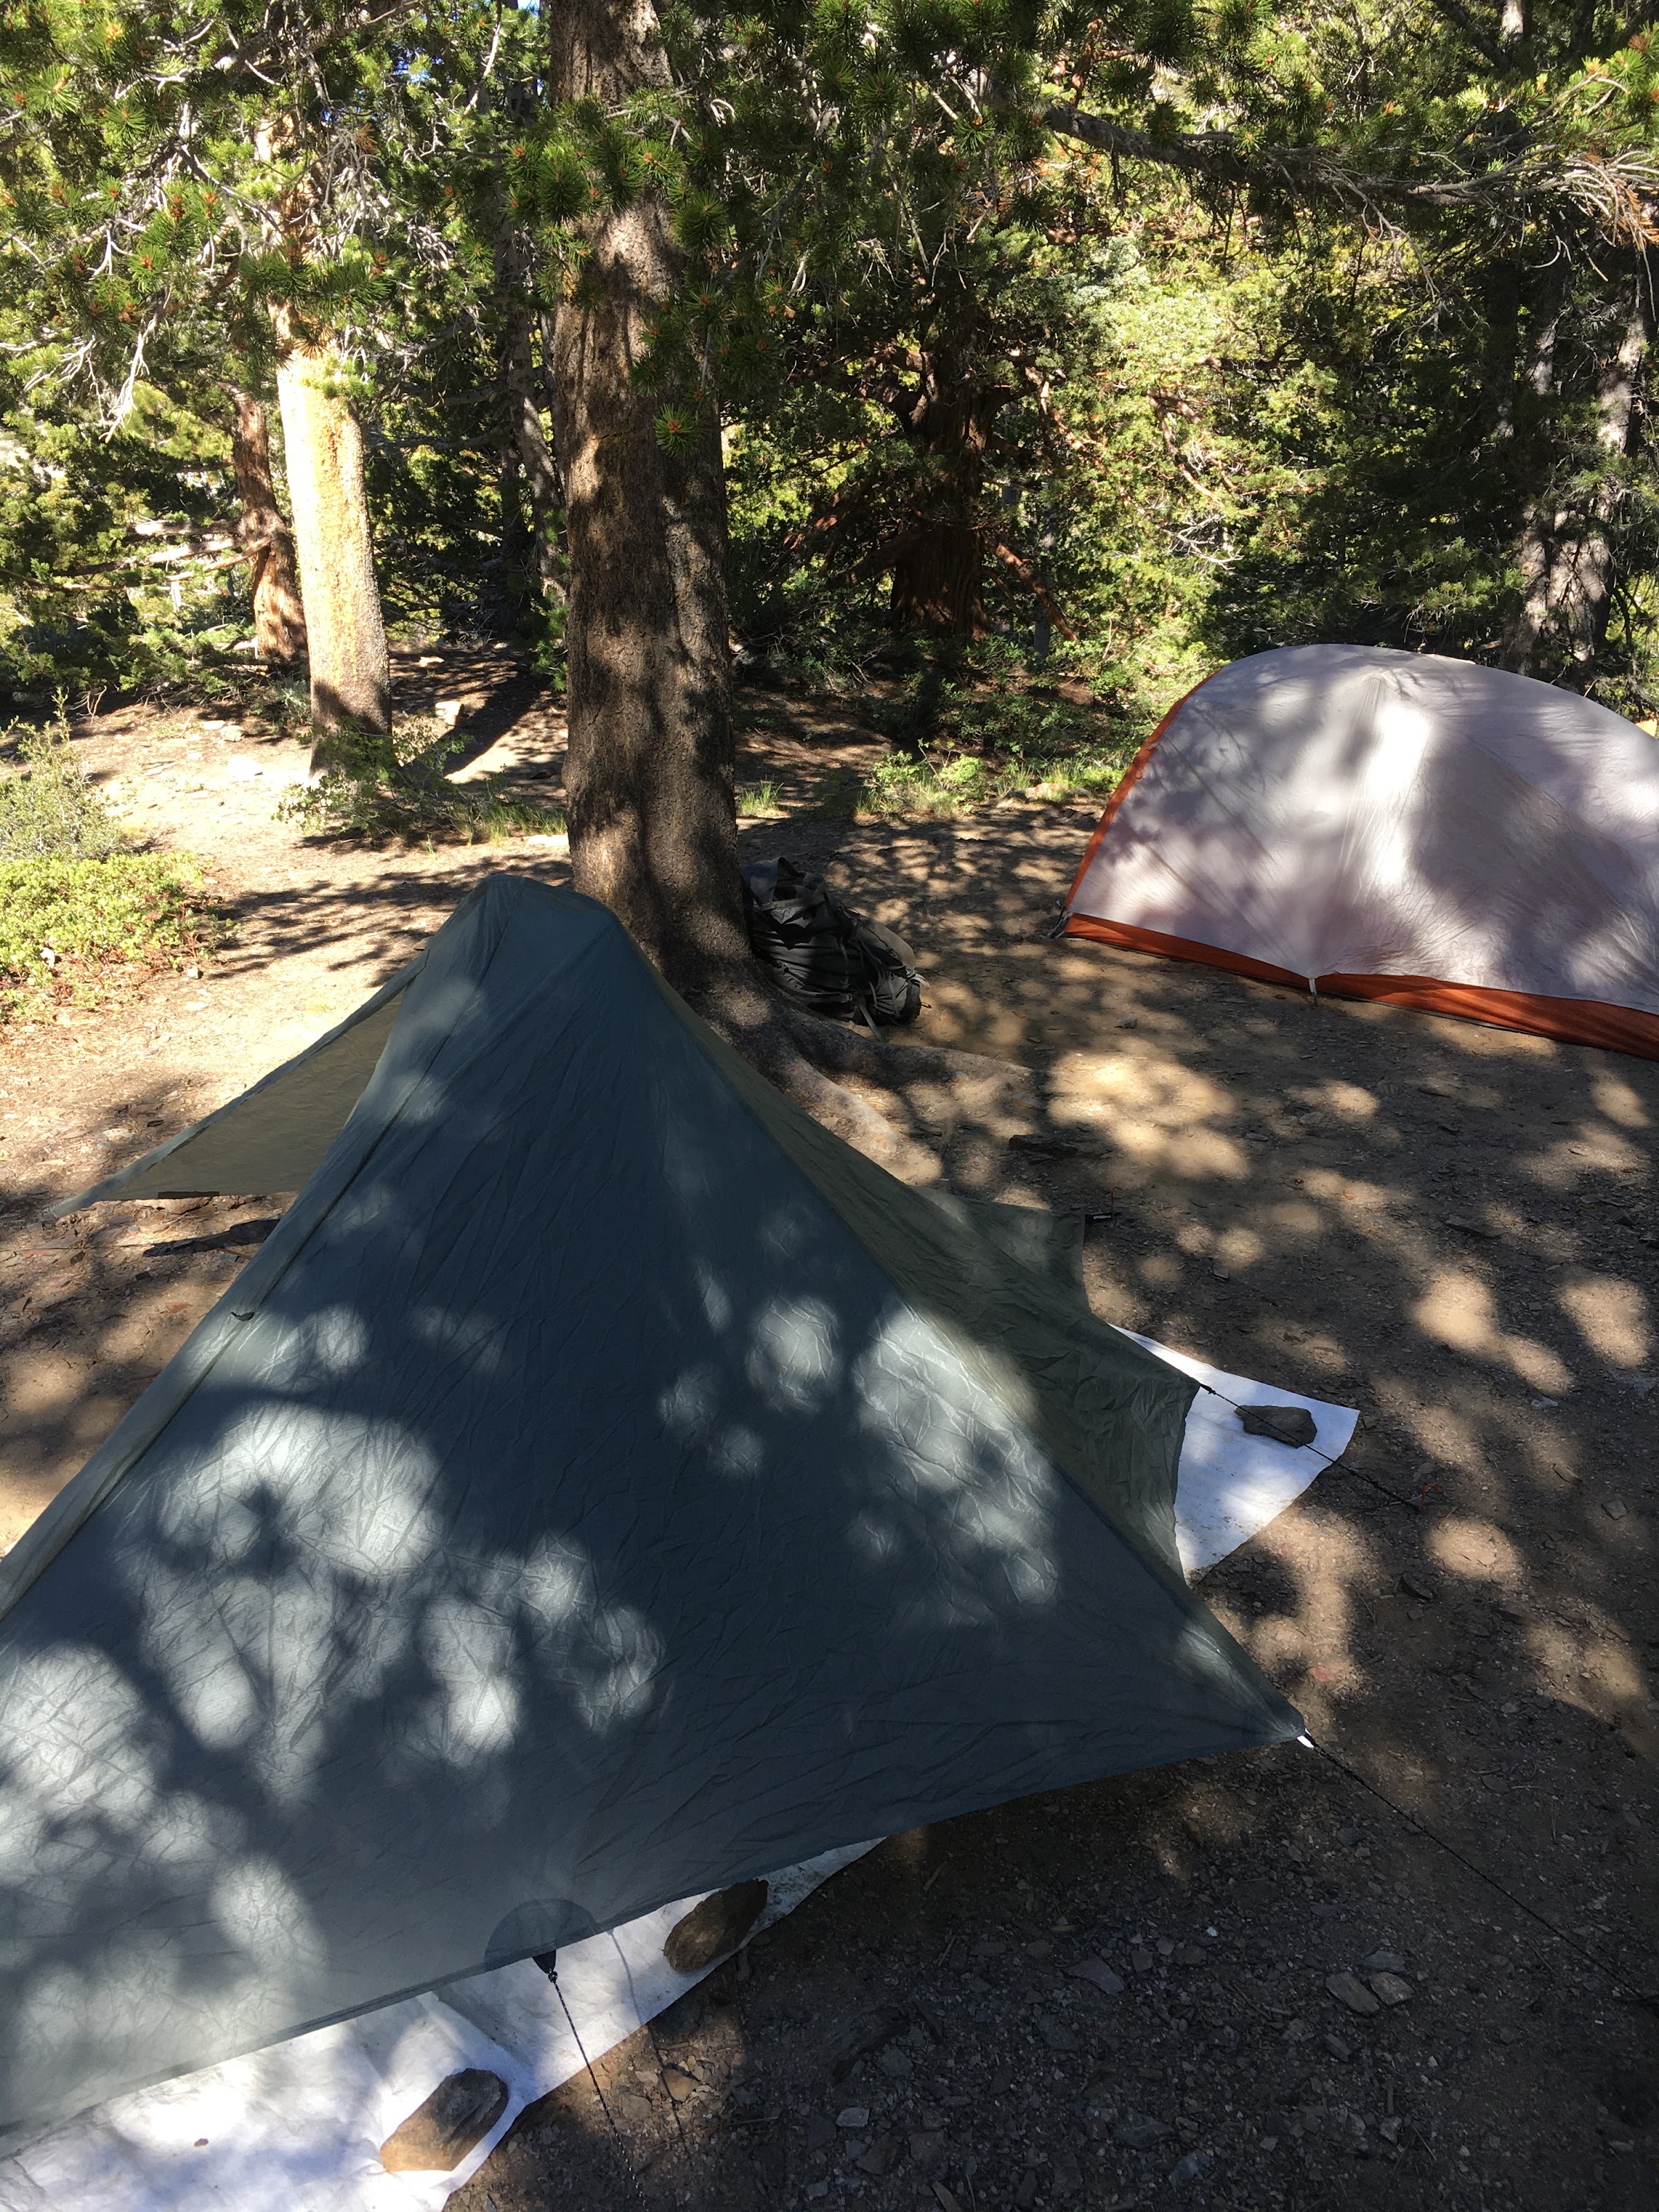 Our camp at Gem Lake